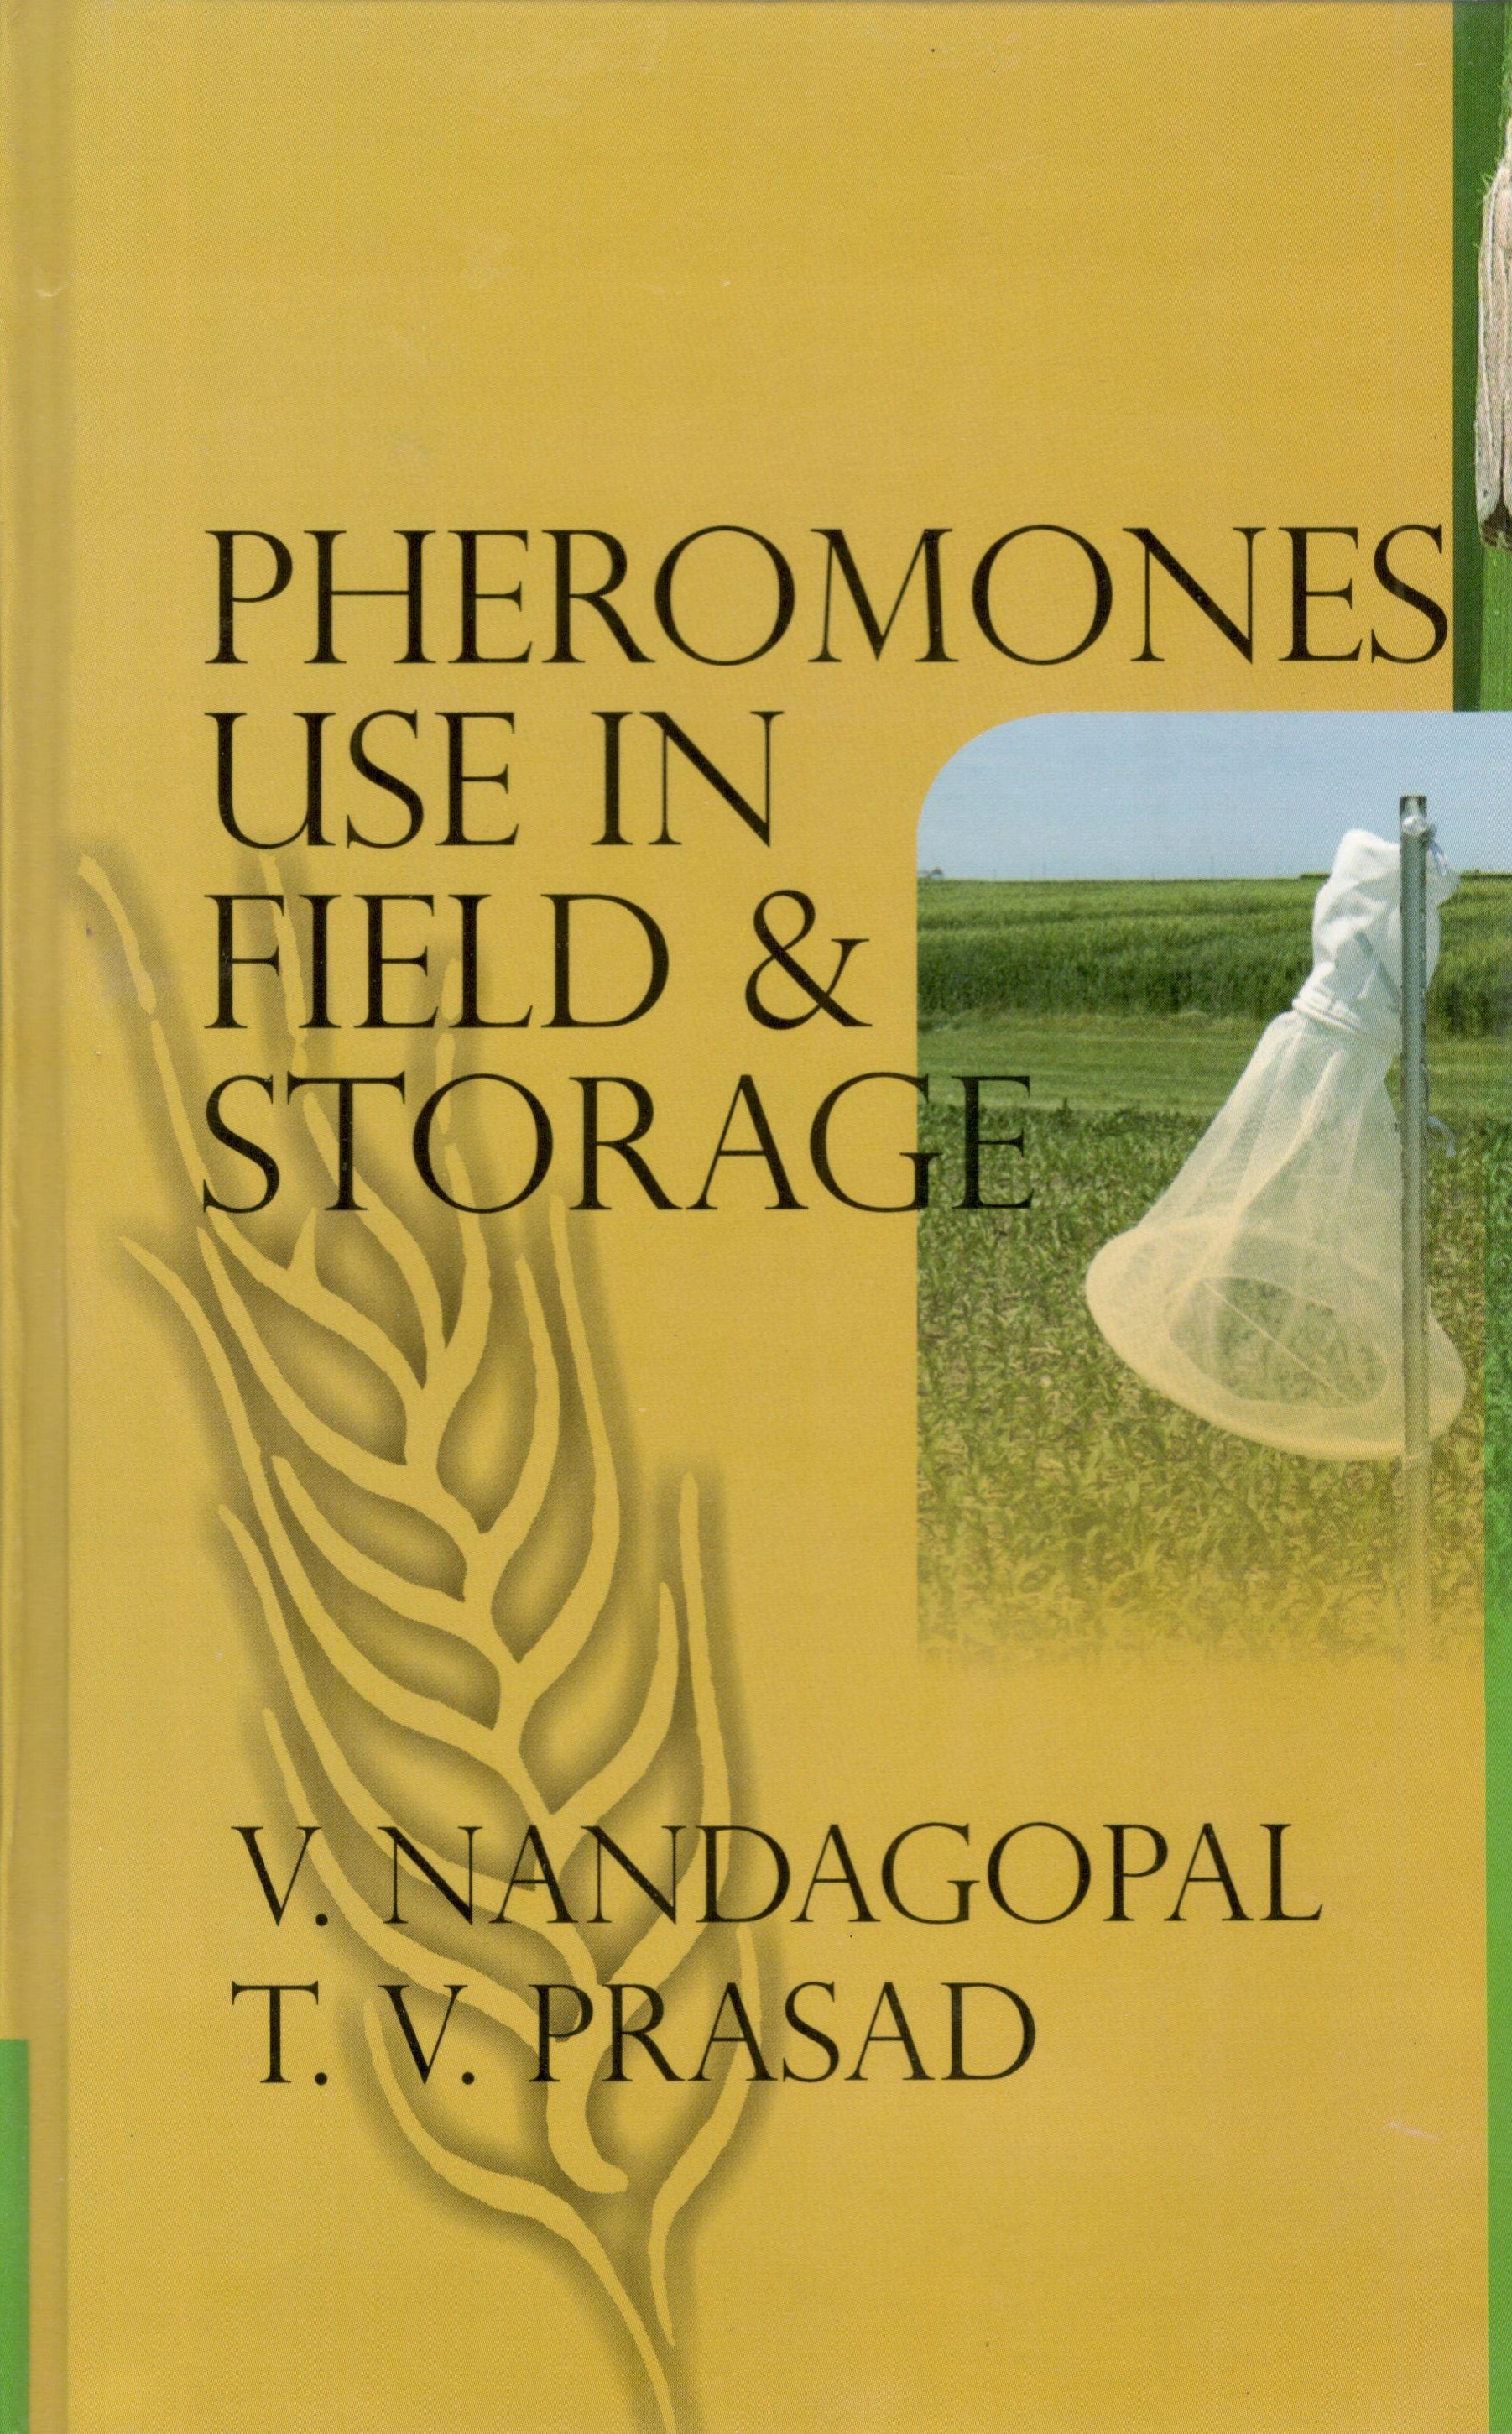 Pheromones Use In Field & Storage